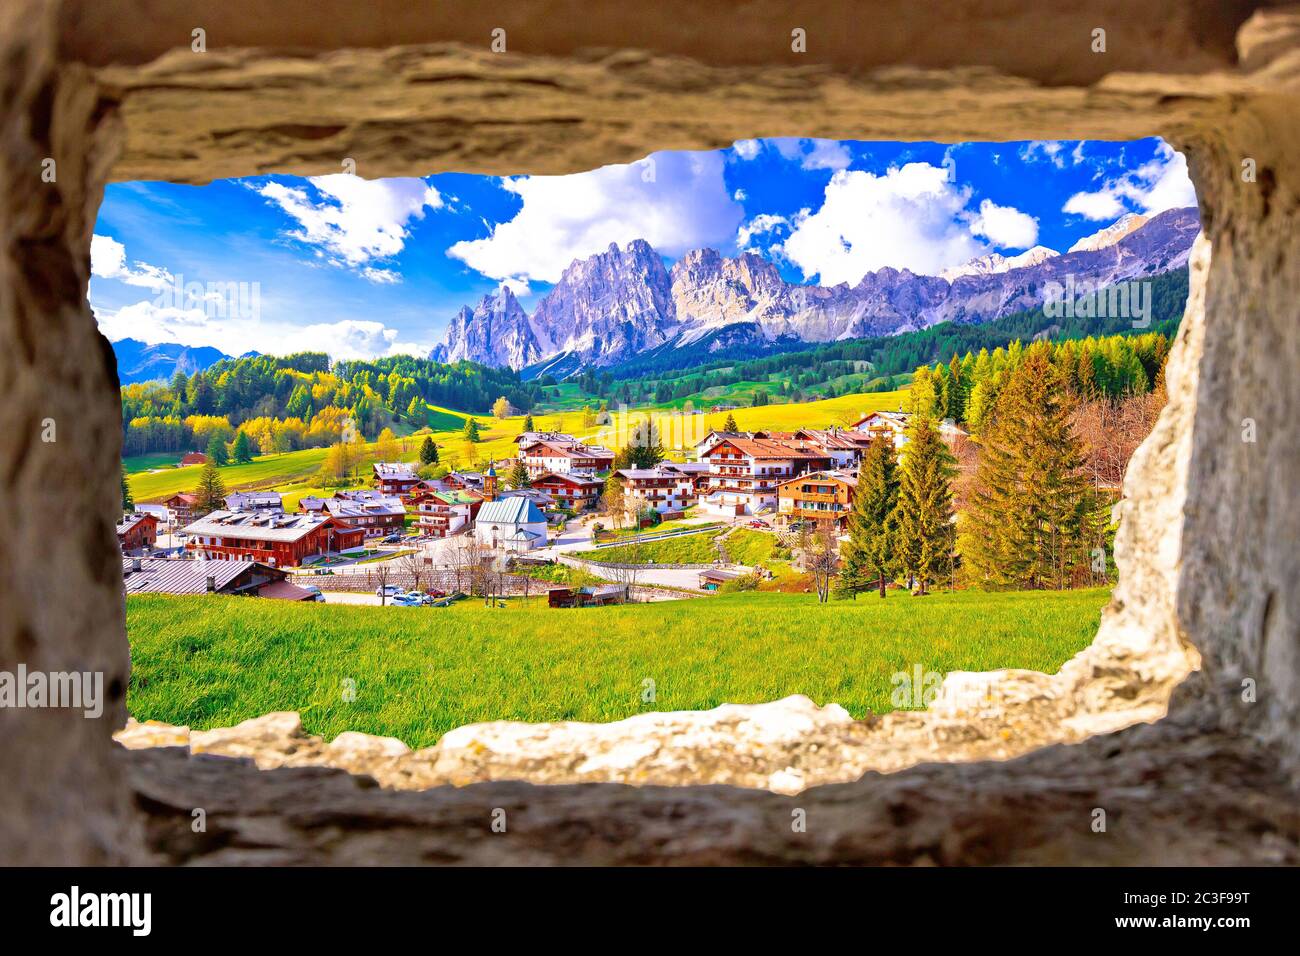 Magnifique paysage de Cortina d''Ampezzo dans les Alpes Dolomites vue par une fenêtre en pierre Banque D'Images